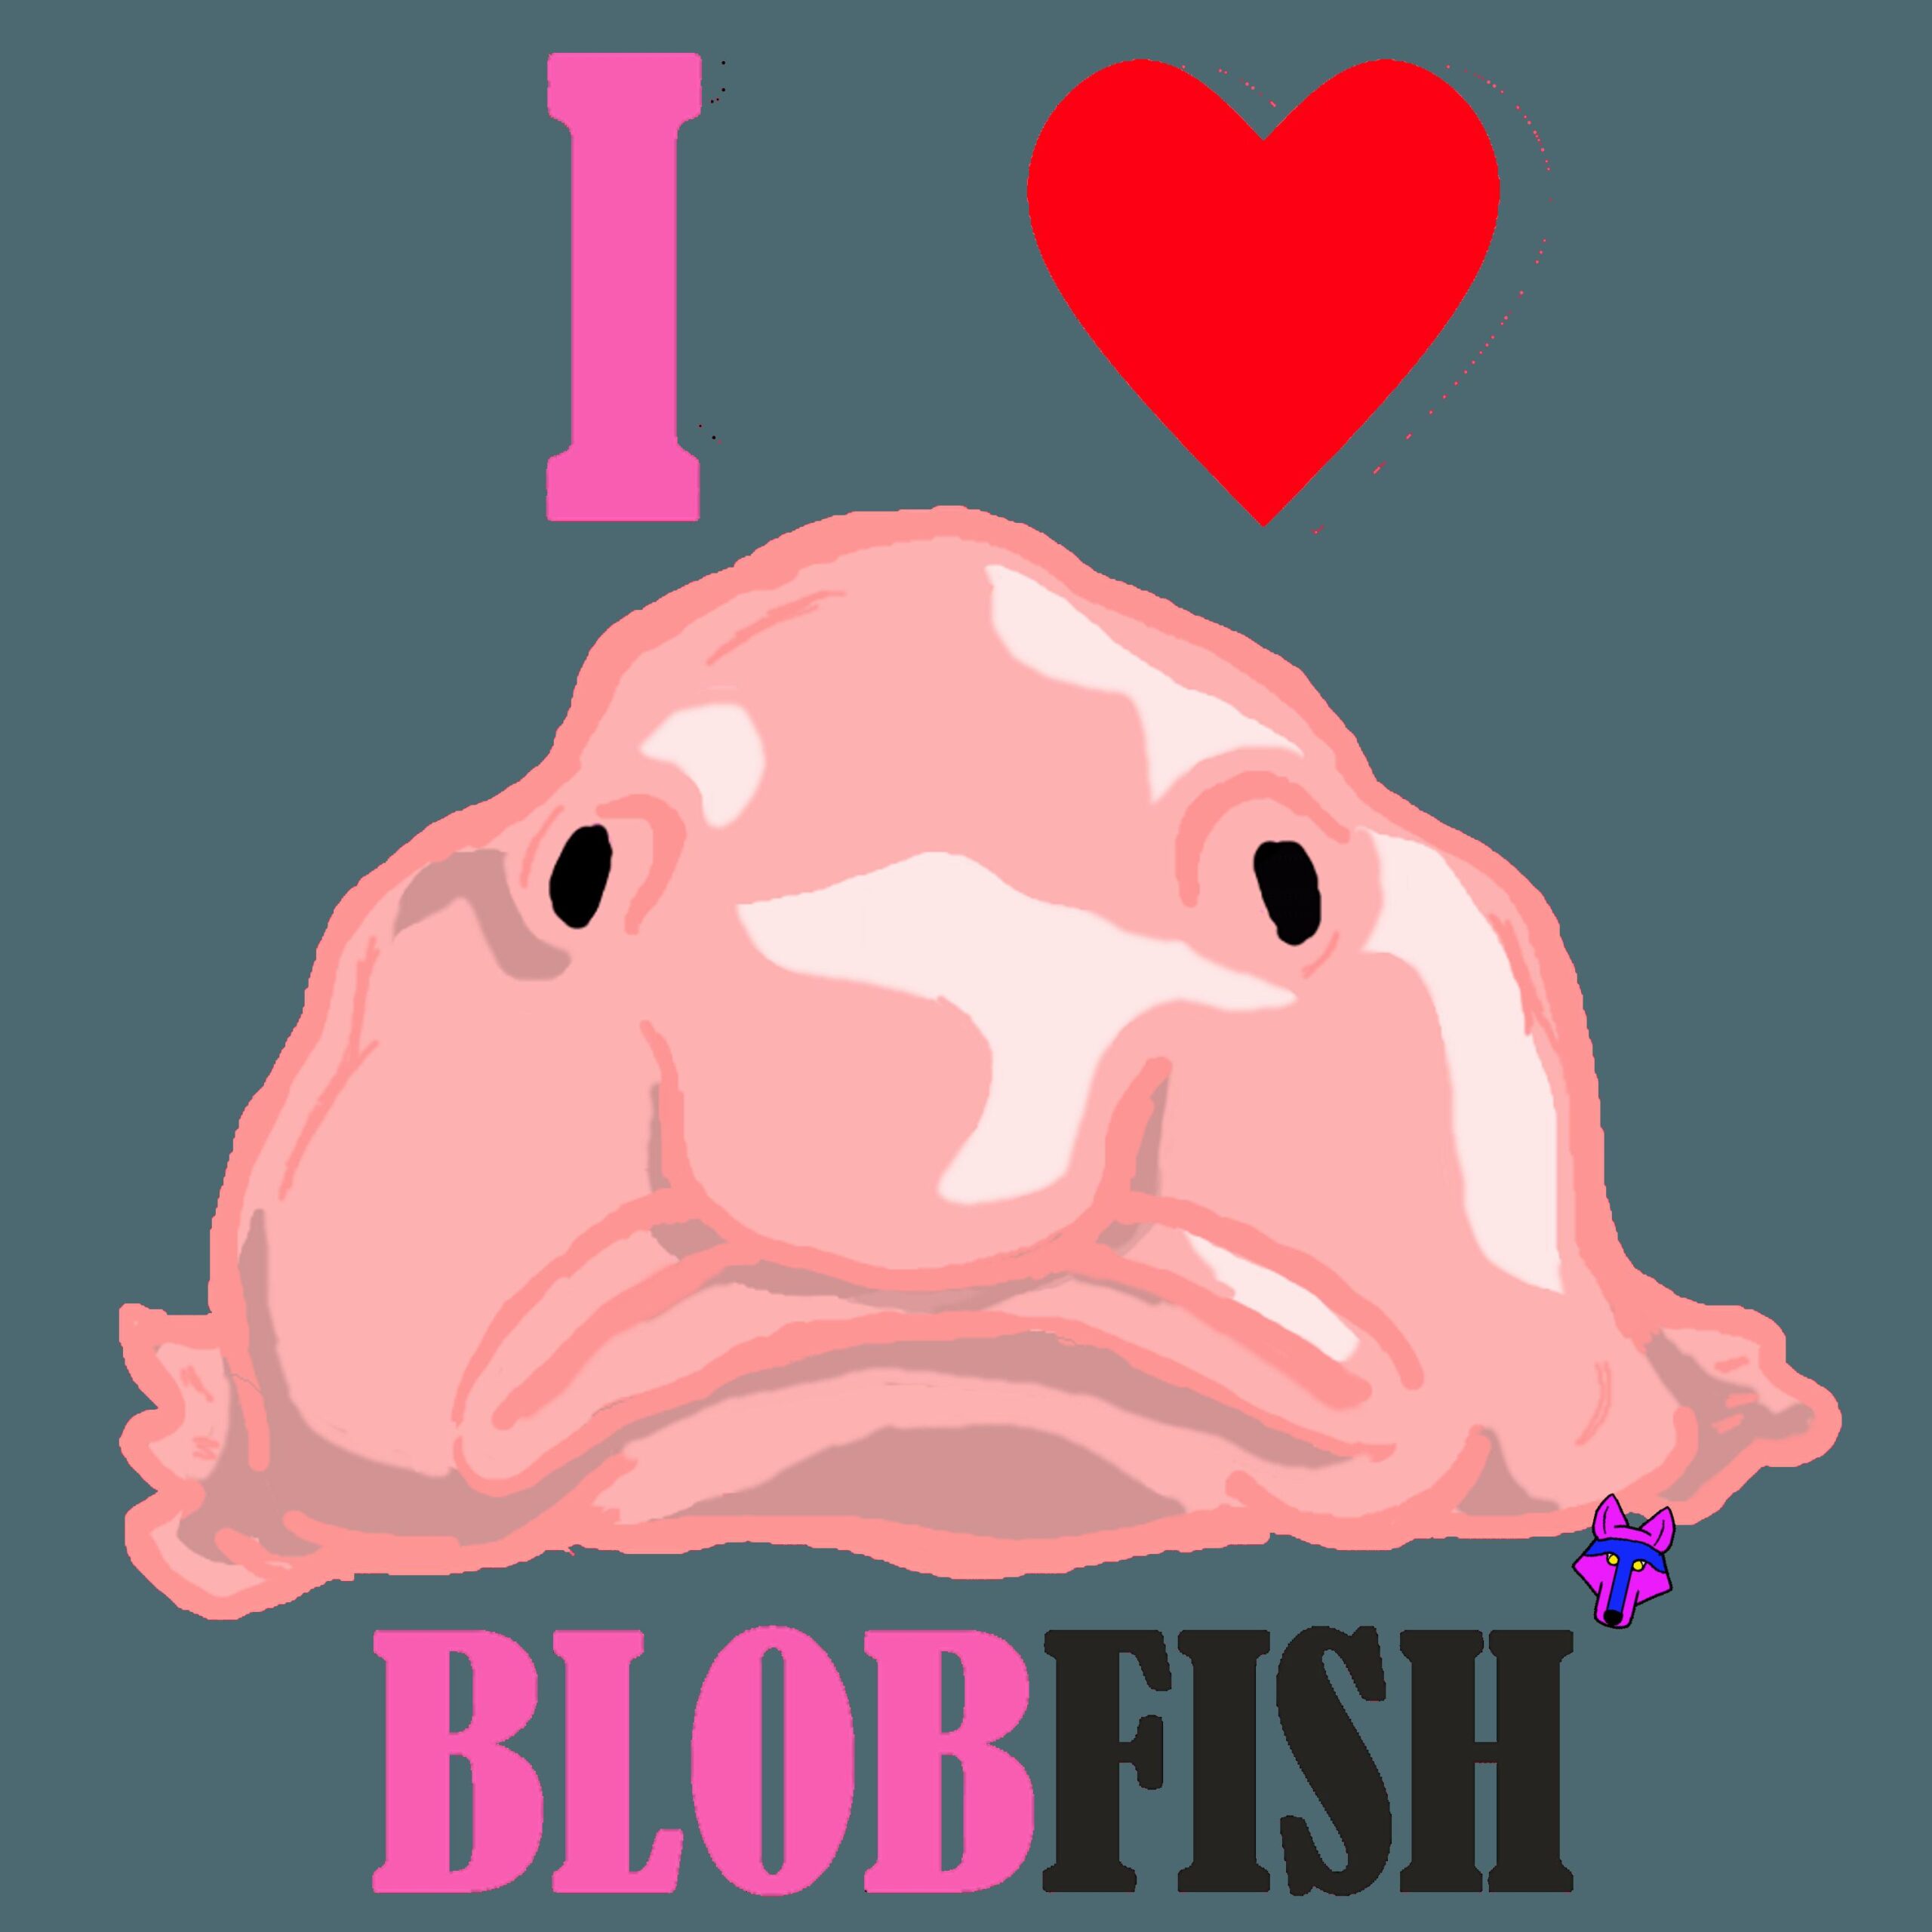 Blob Fish Wallpaper Hd, Blob Fish, Animal